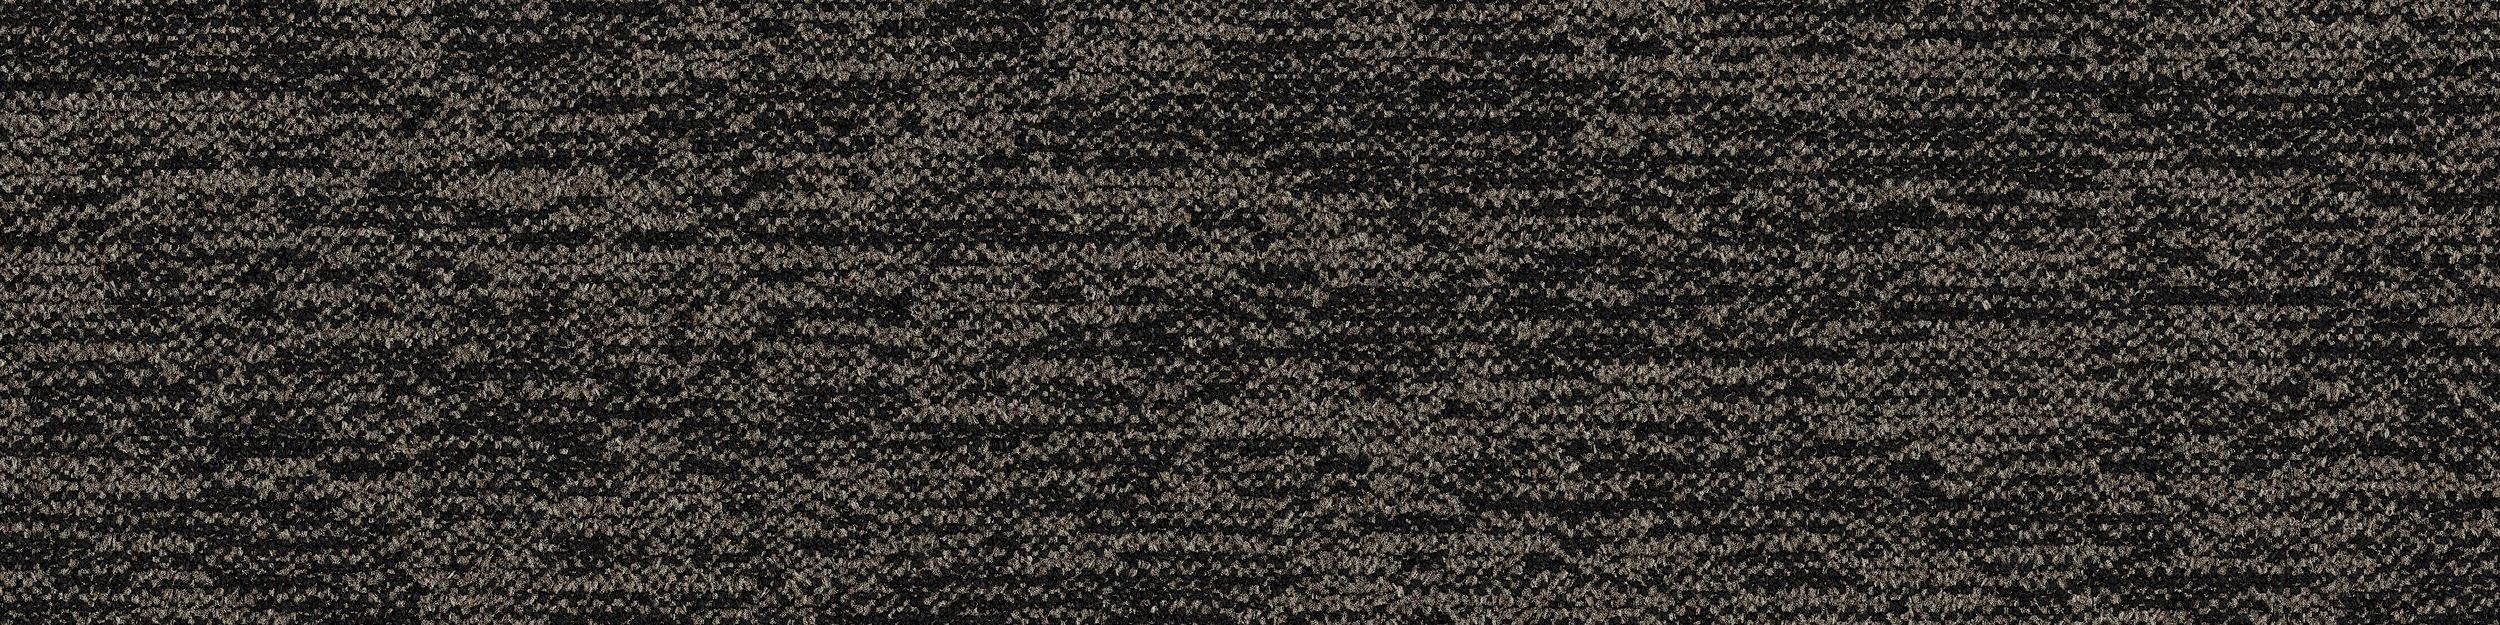 DL908 Carpet Tile In Basalt image number 3